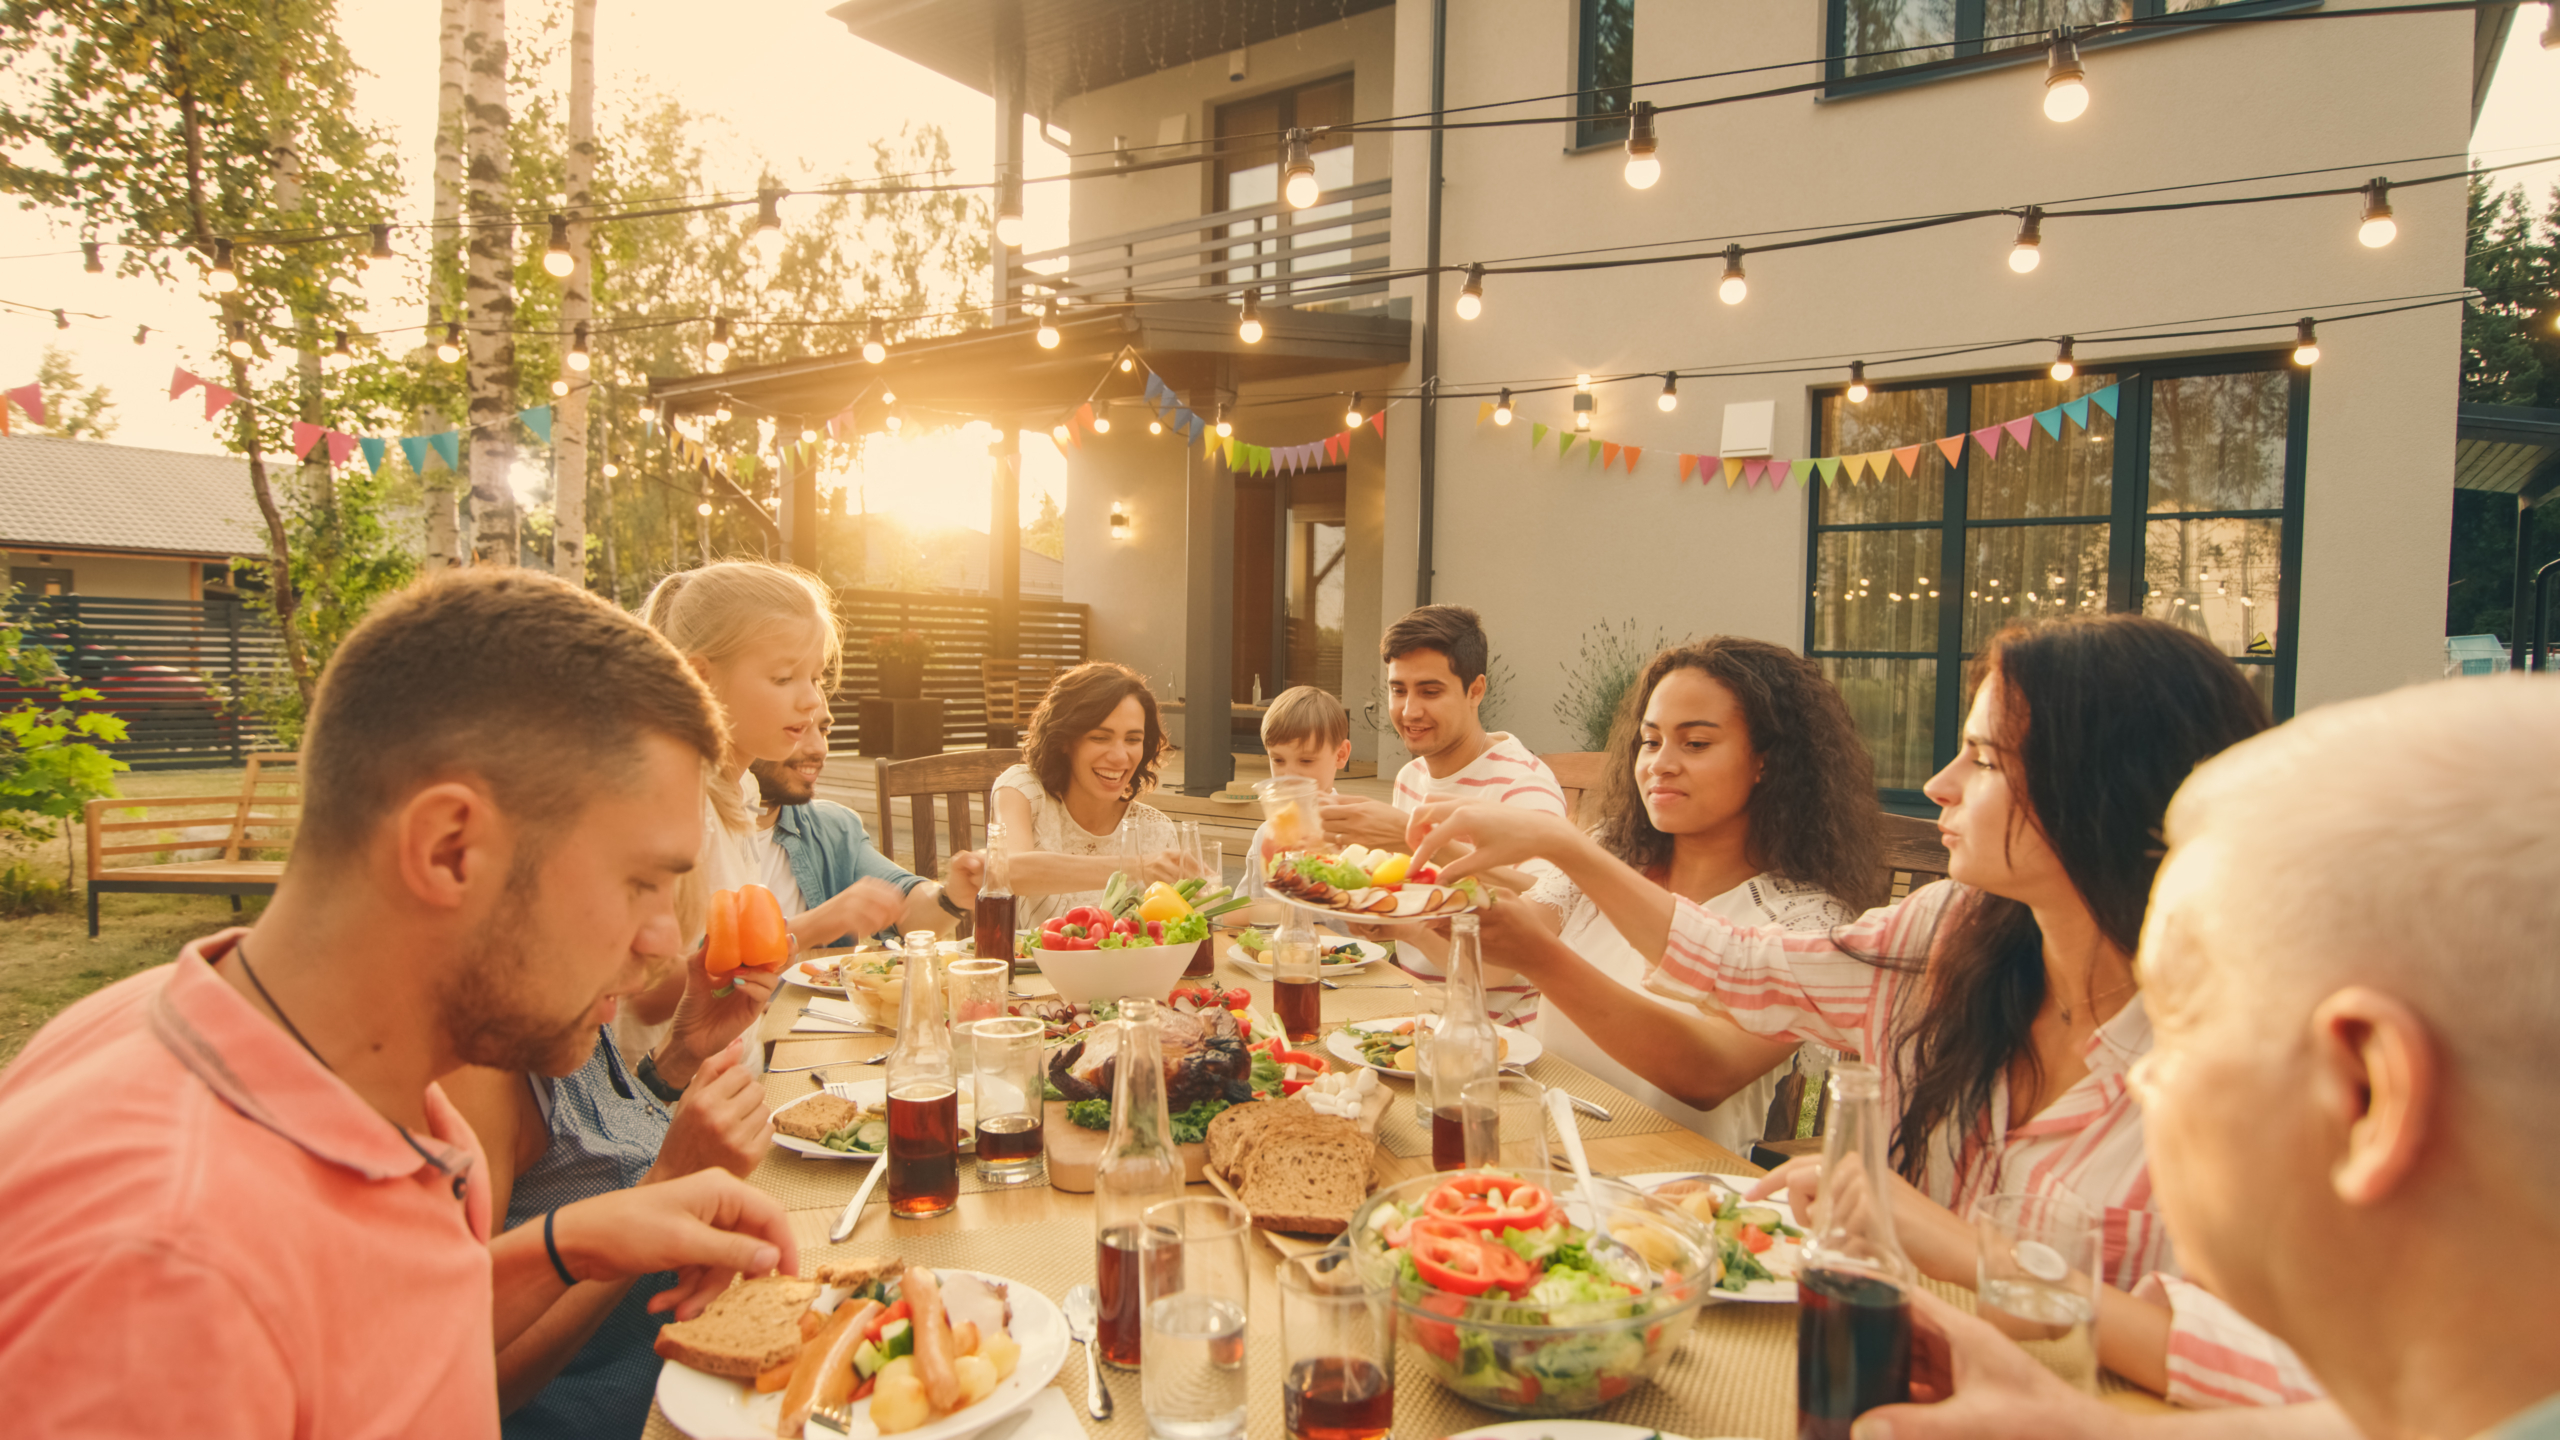 Bữa ăn gia đình rất quan trọng, ngay cả khi mọi người chỉ ăn cùng nhau một lần một tuần. Với những món ăn ngon, những người thân yêu và những cuộc thảo luận sôi nổi, thật khó để từ bỏ bữa tối gia đình truyền thống này. (Ảnh: Shutterstock)